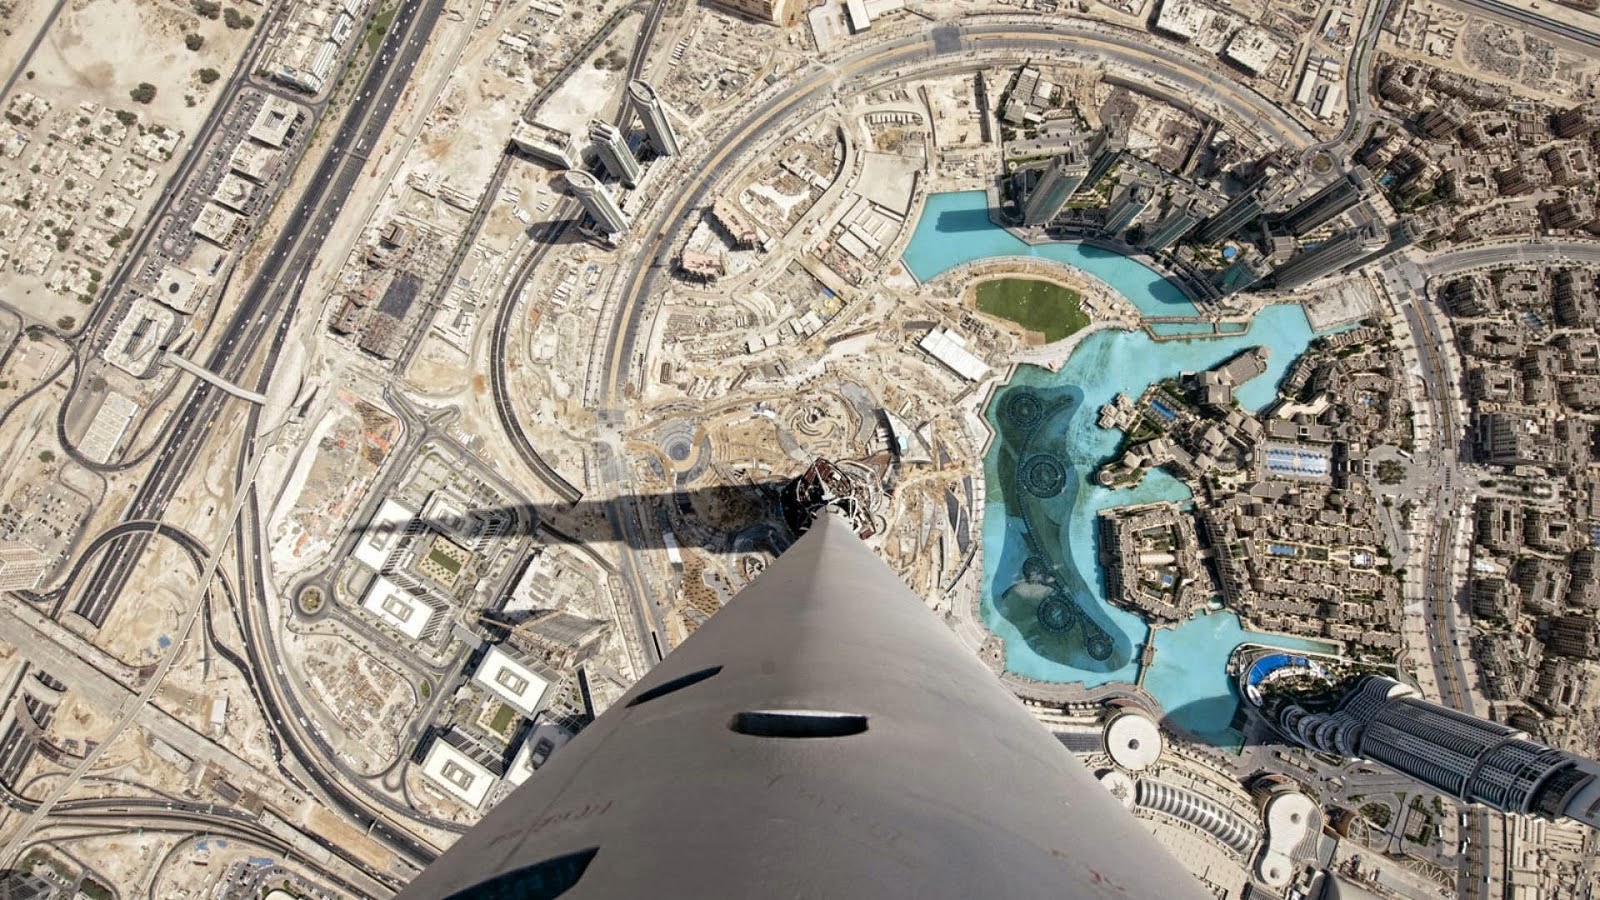 И в качестве бонуса для любознательных - путешествие на 124 этаж небоскреба Burj Khalifa. Полетаем в облаках!